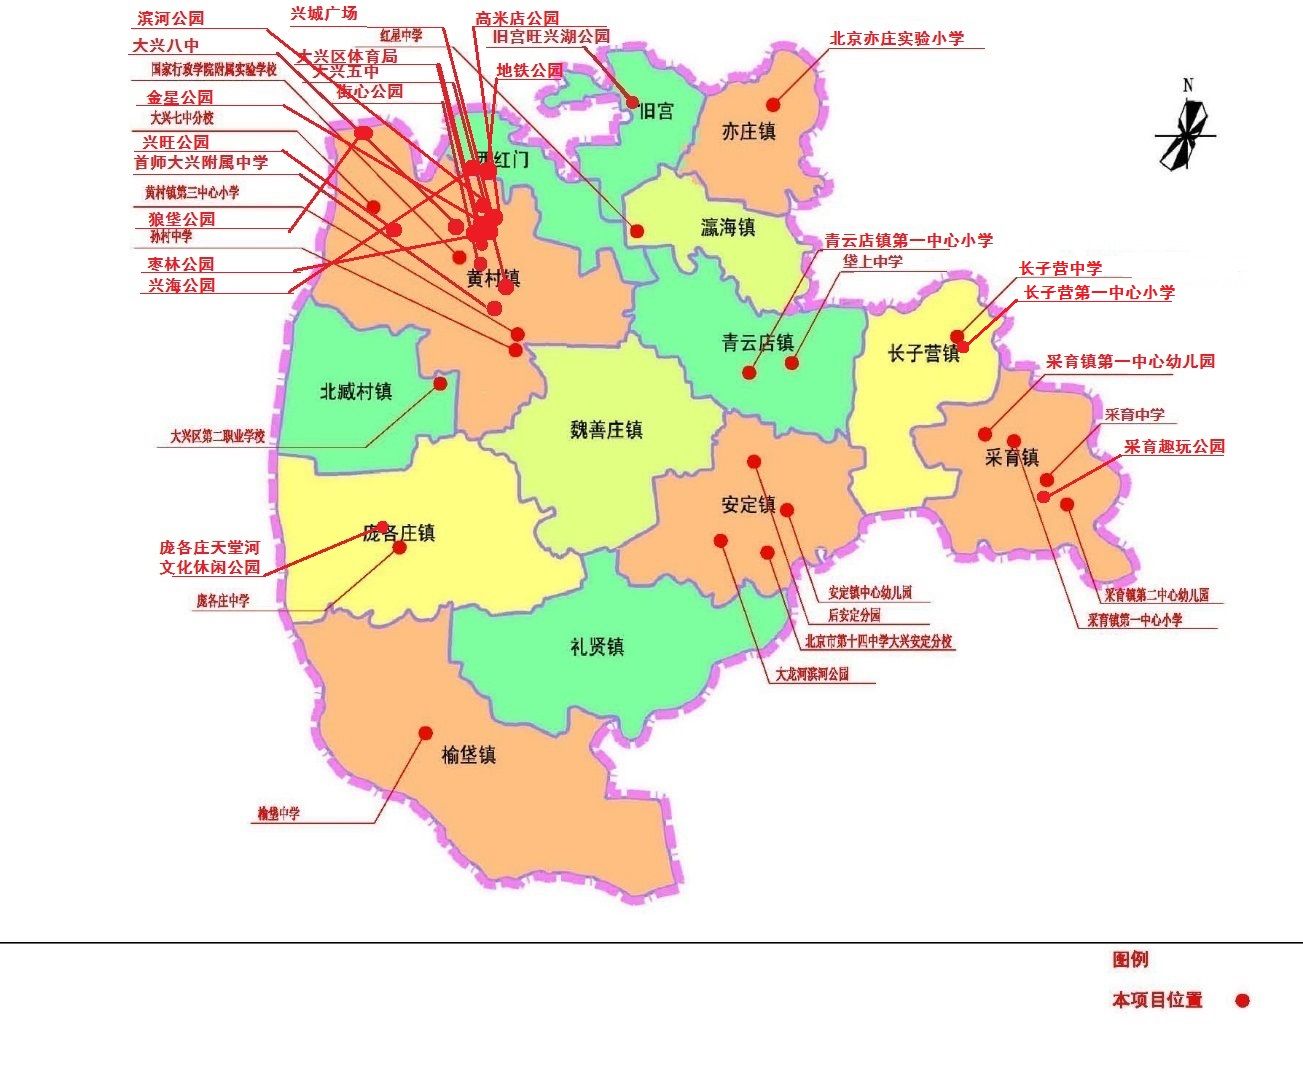 北京市大兴区地震应急避难场所分布图